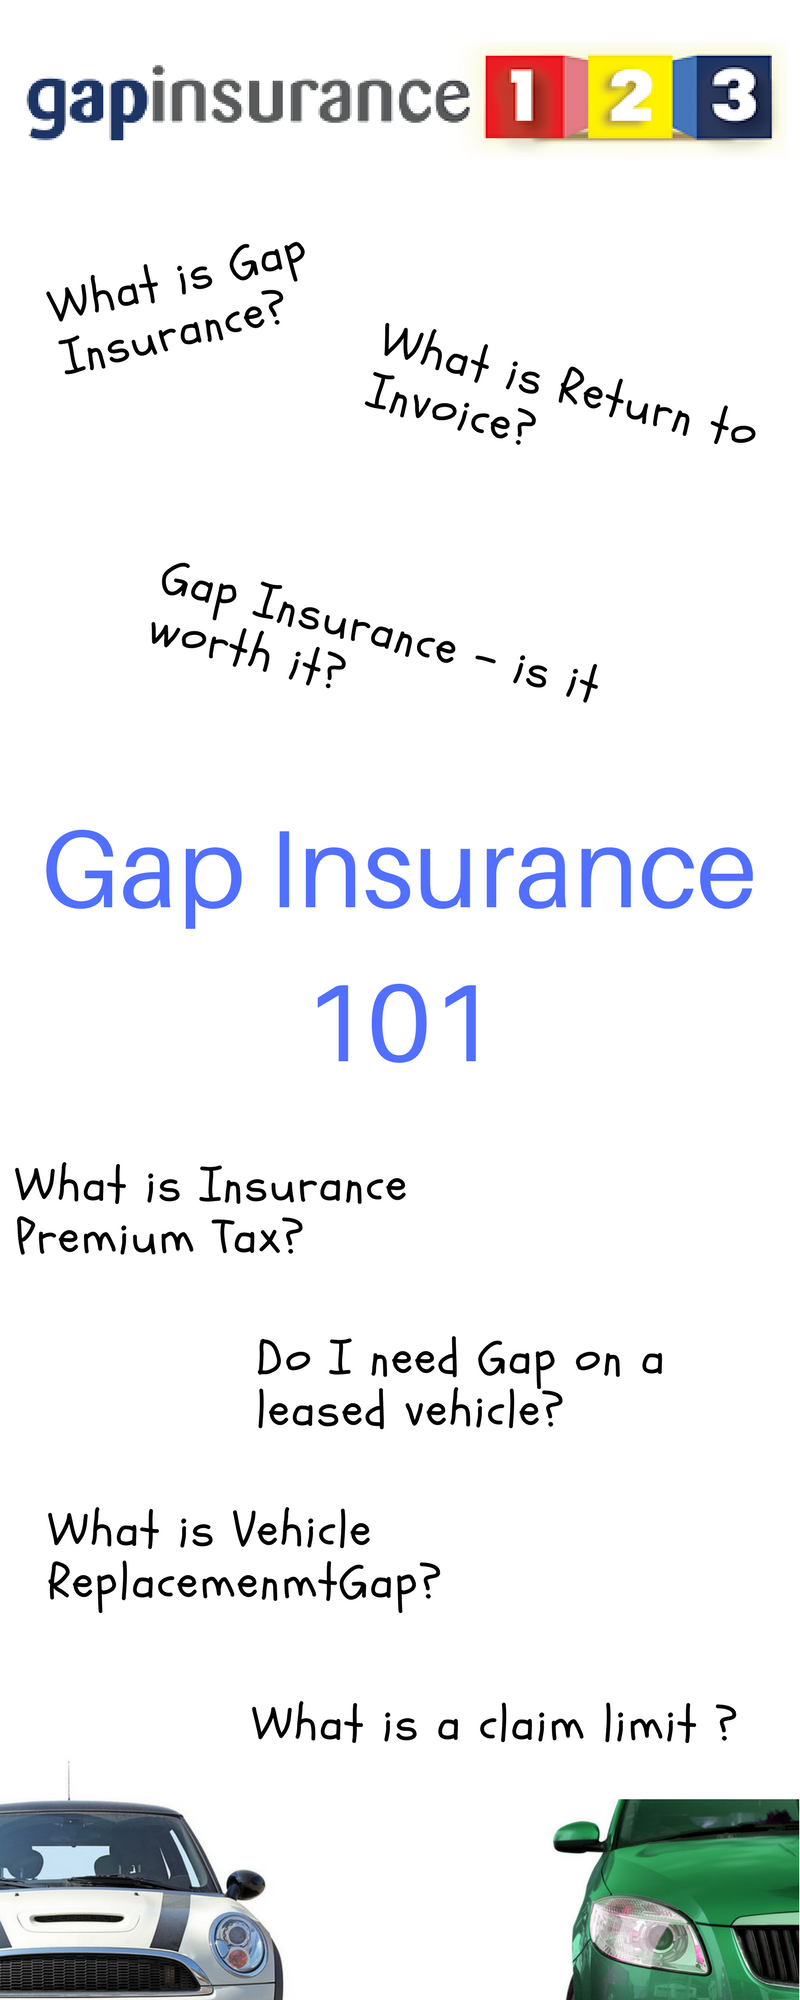 Gap Insurance ultimate guide